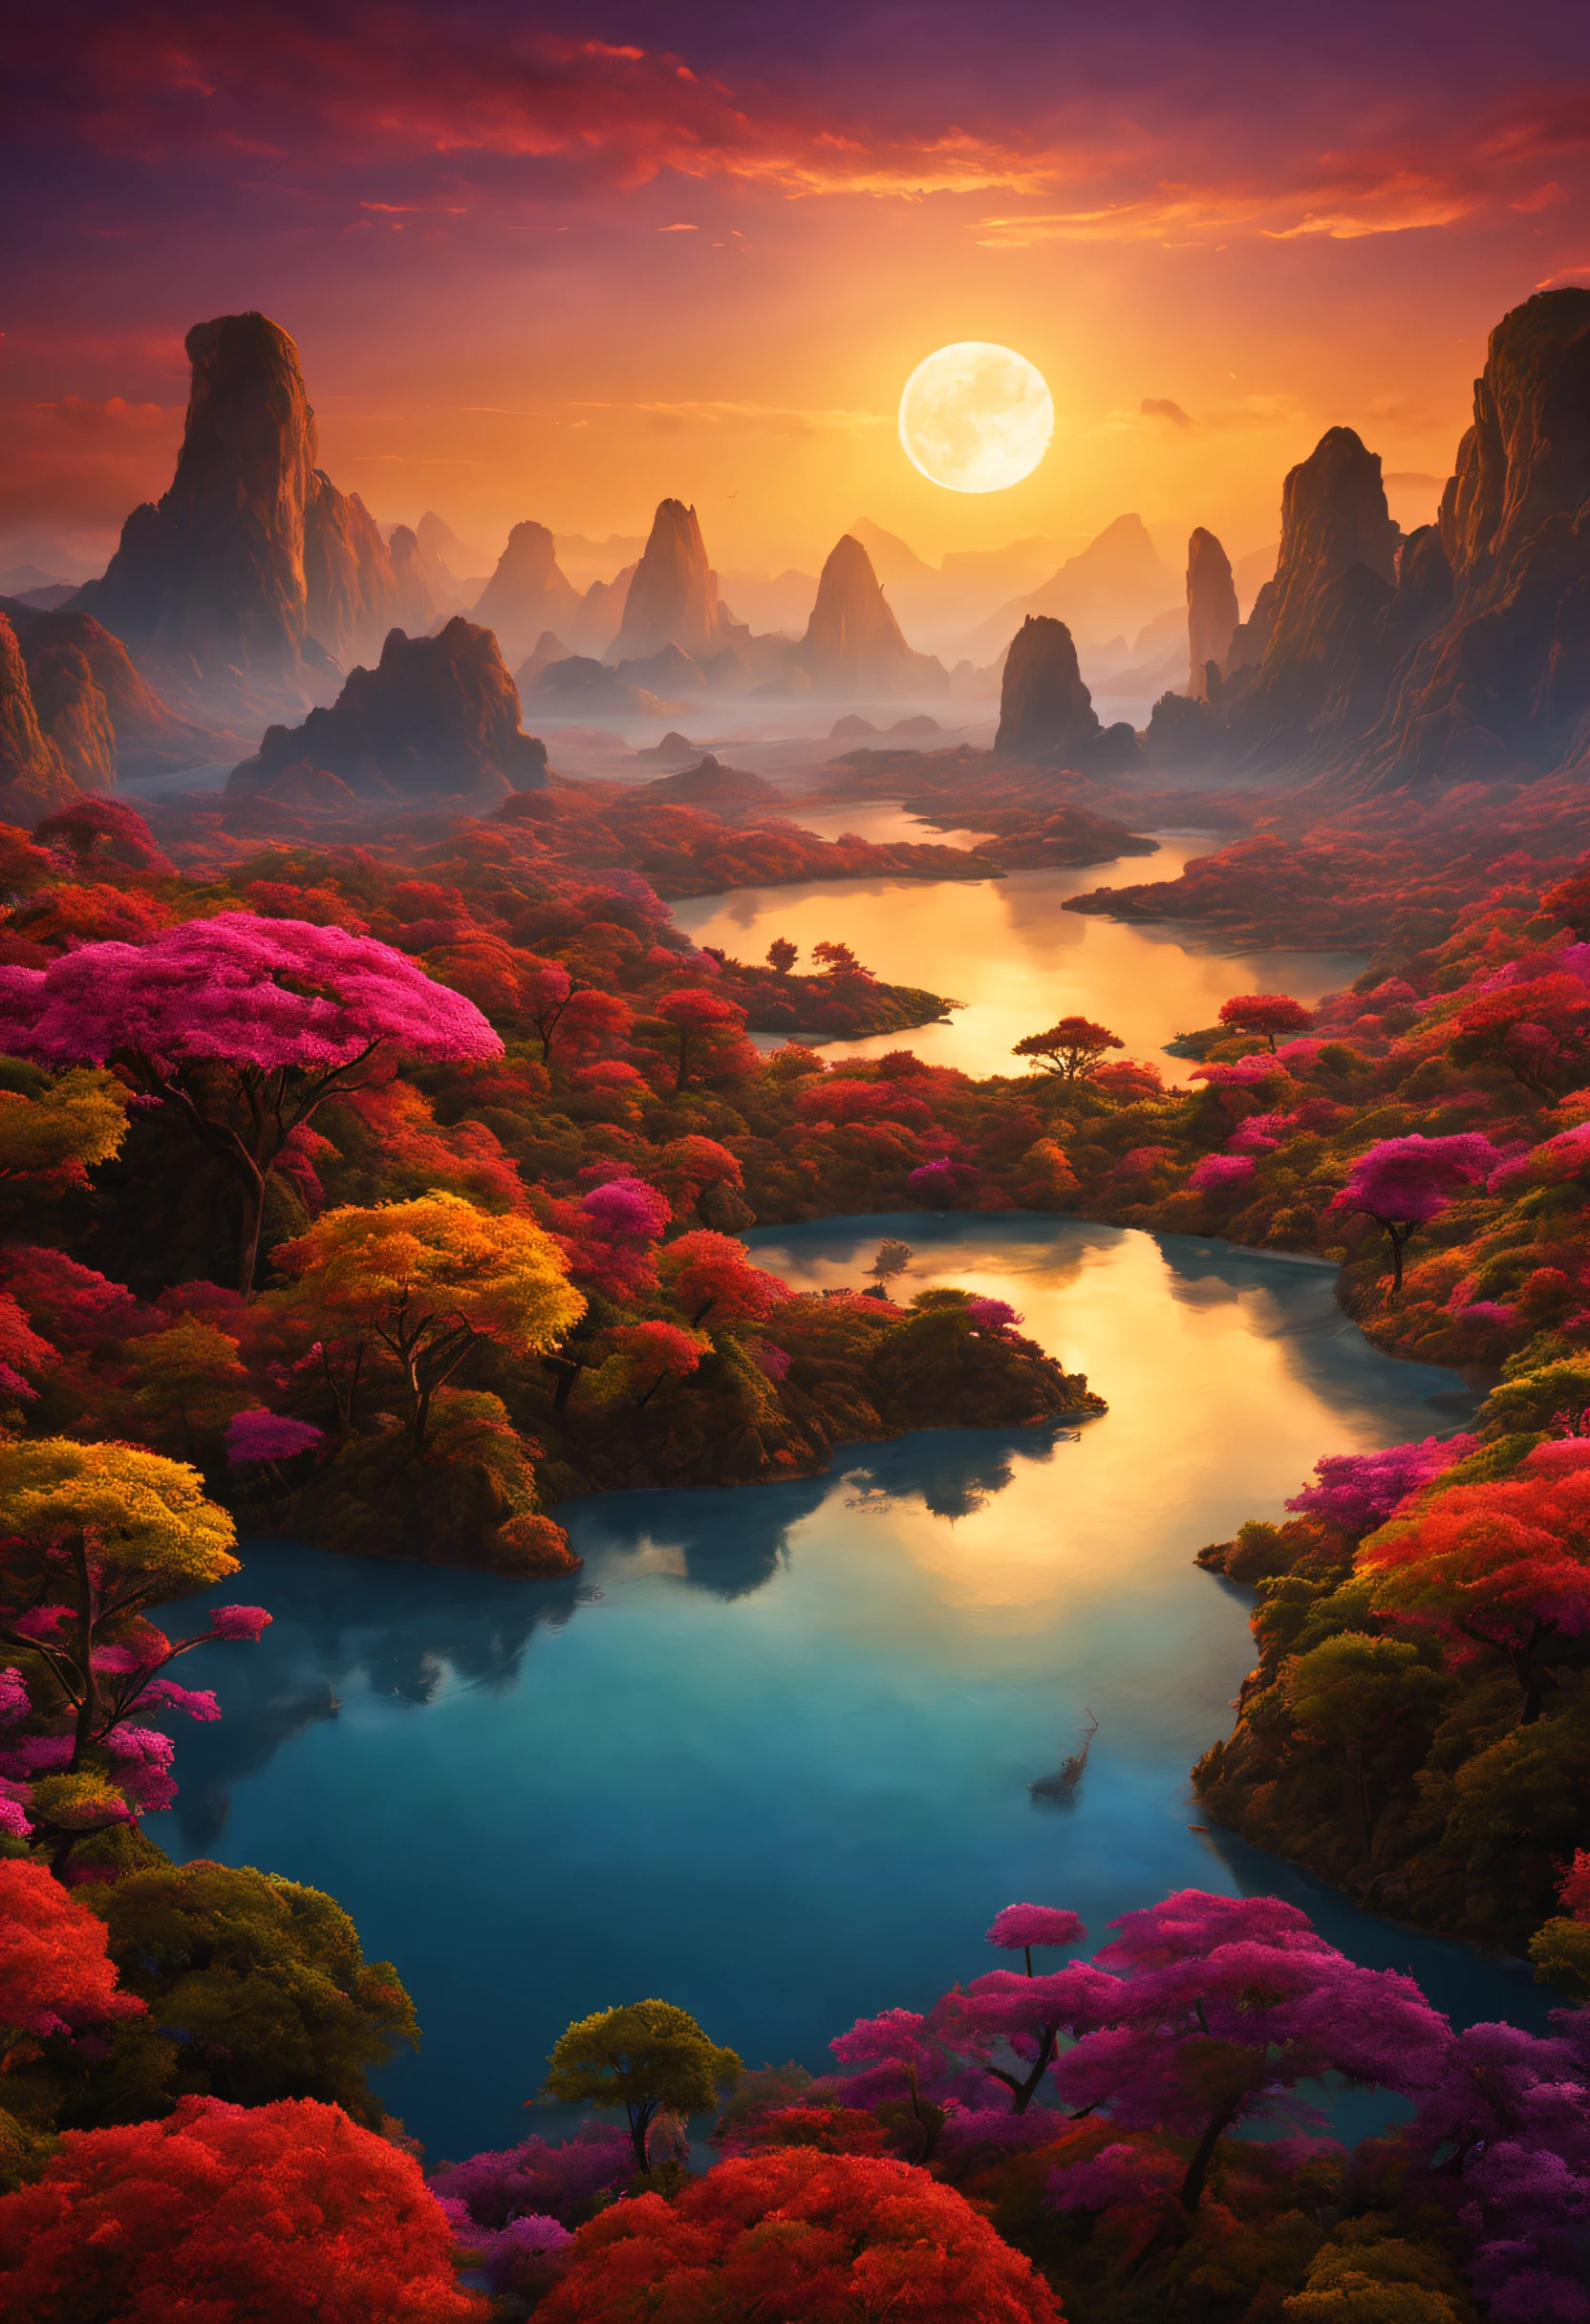 一个奇异的星球上美丽壮丽的想象景观，有着许多彩色的日落和非凡的